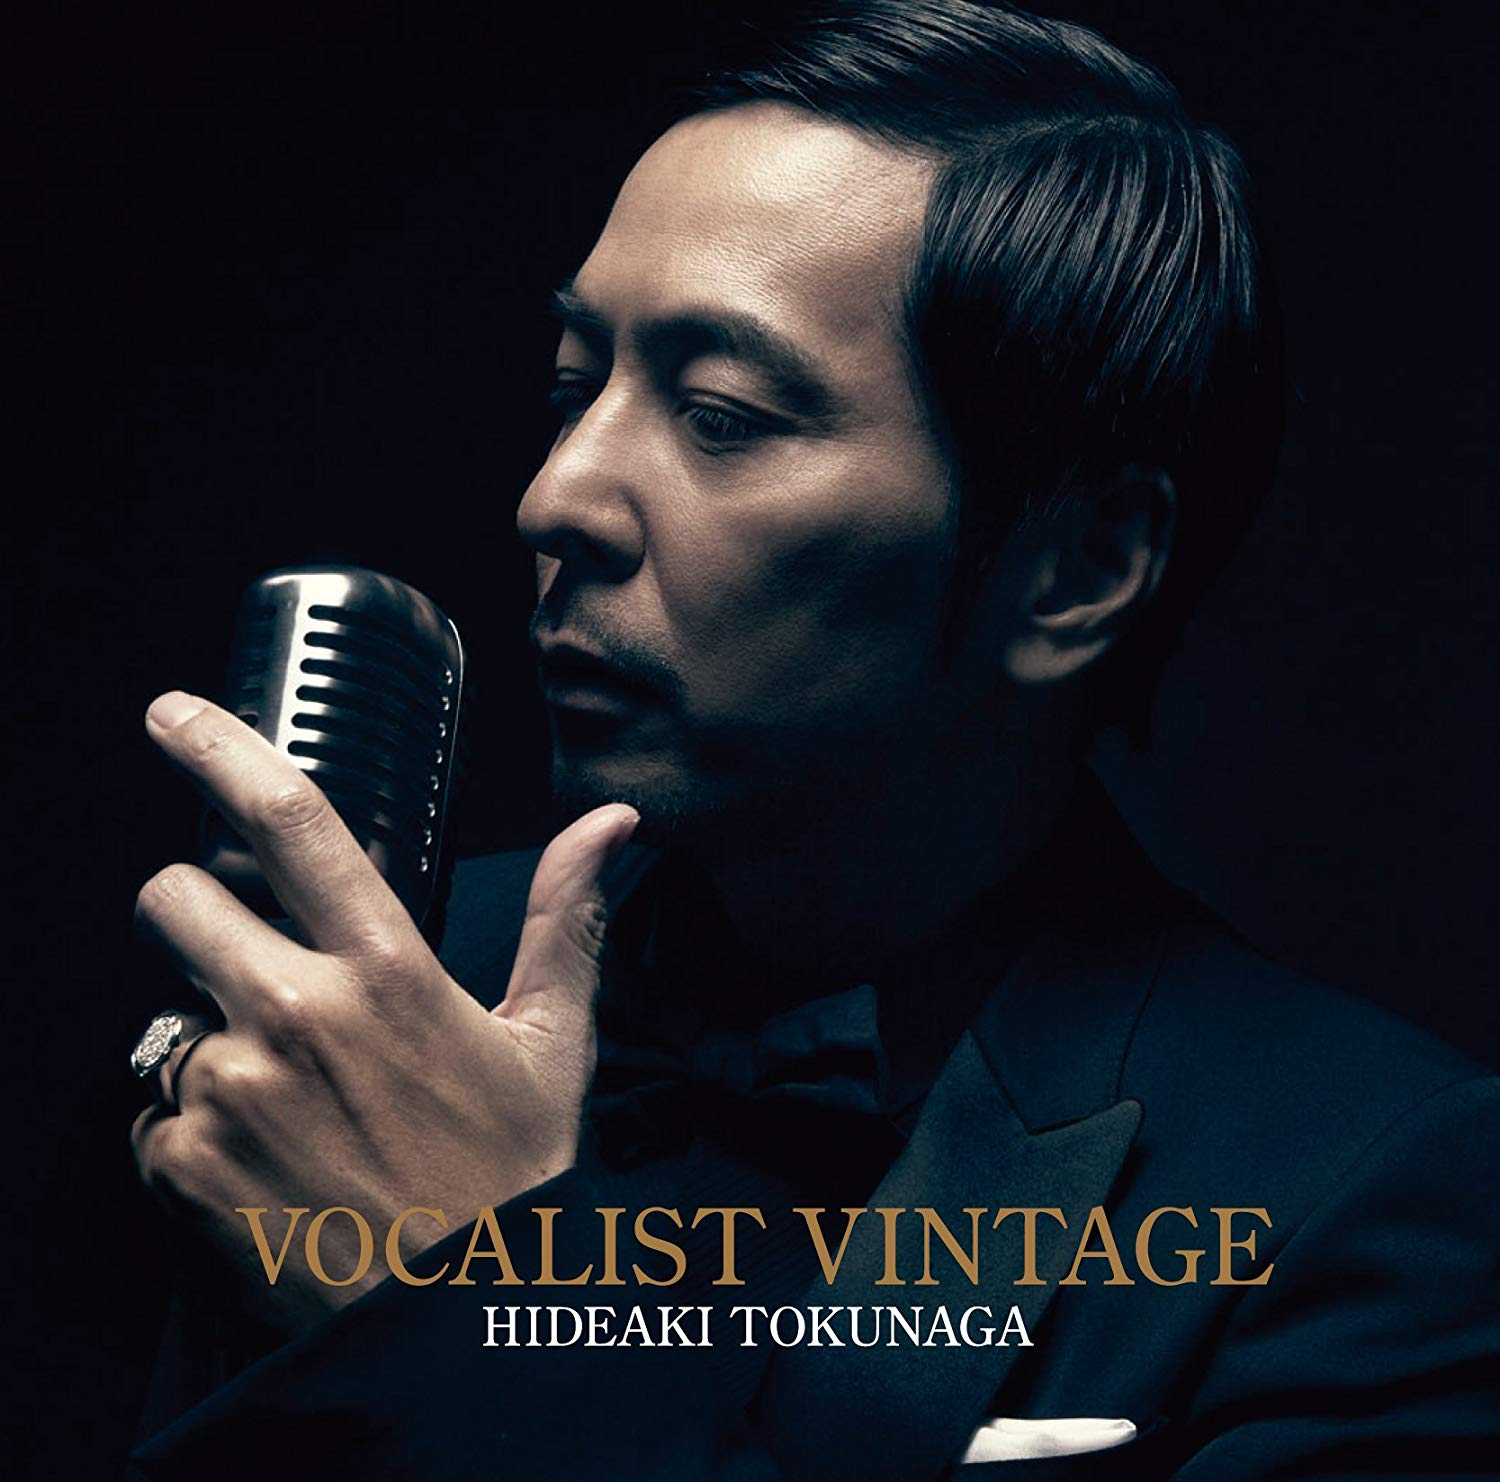 徳永英明 (Hideaki Tokunaga) – VOCALIST VINTAGE [Mora FLAC 24bit/48kHz]